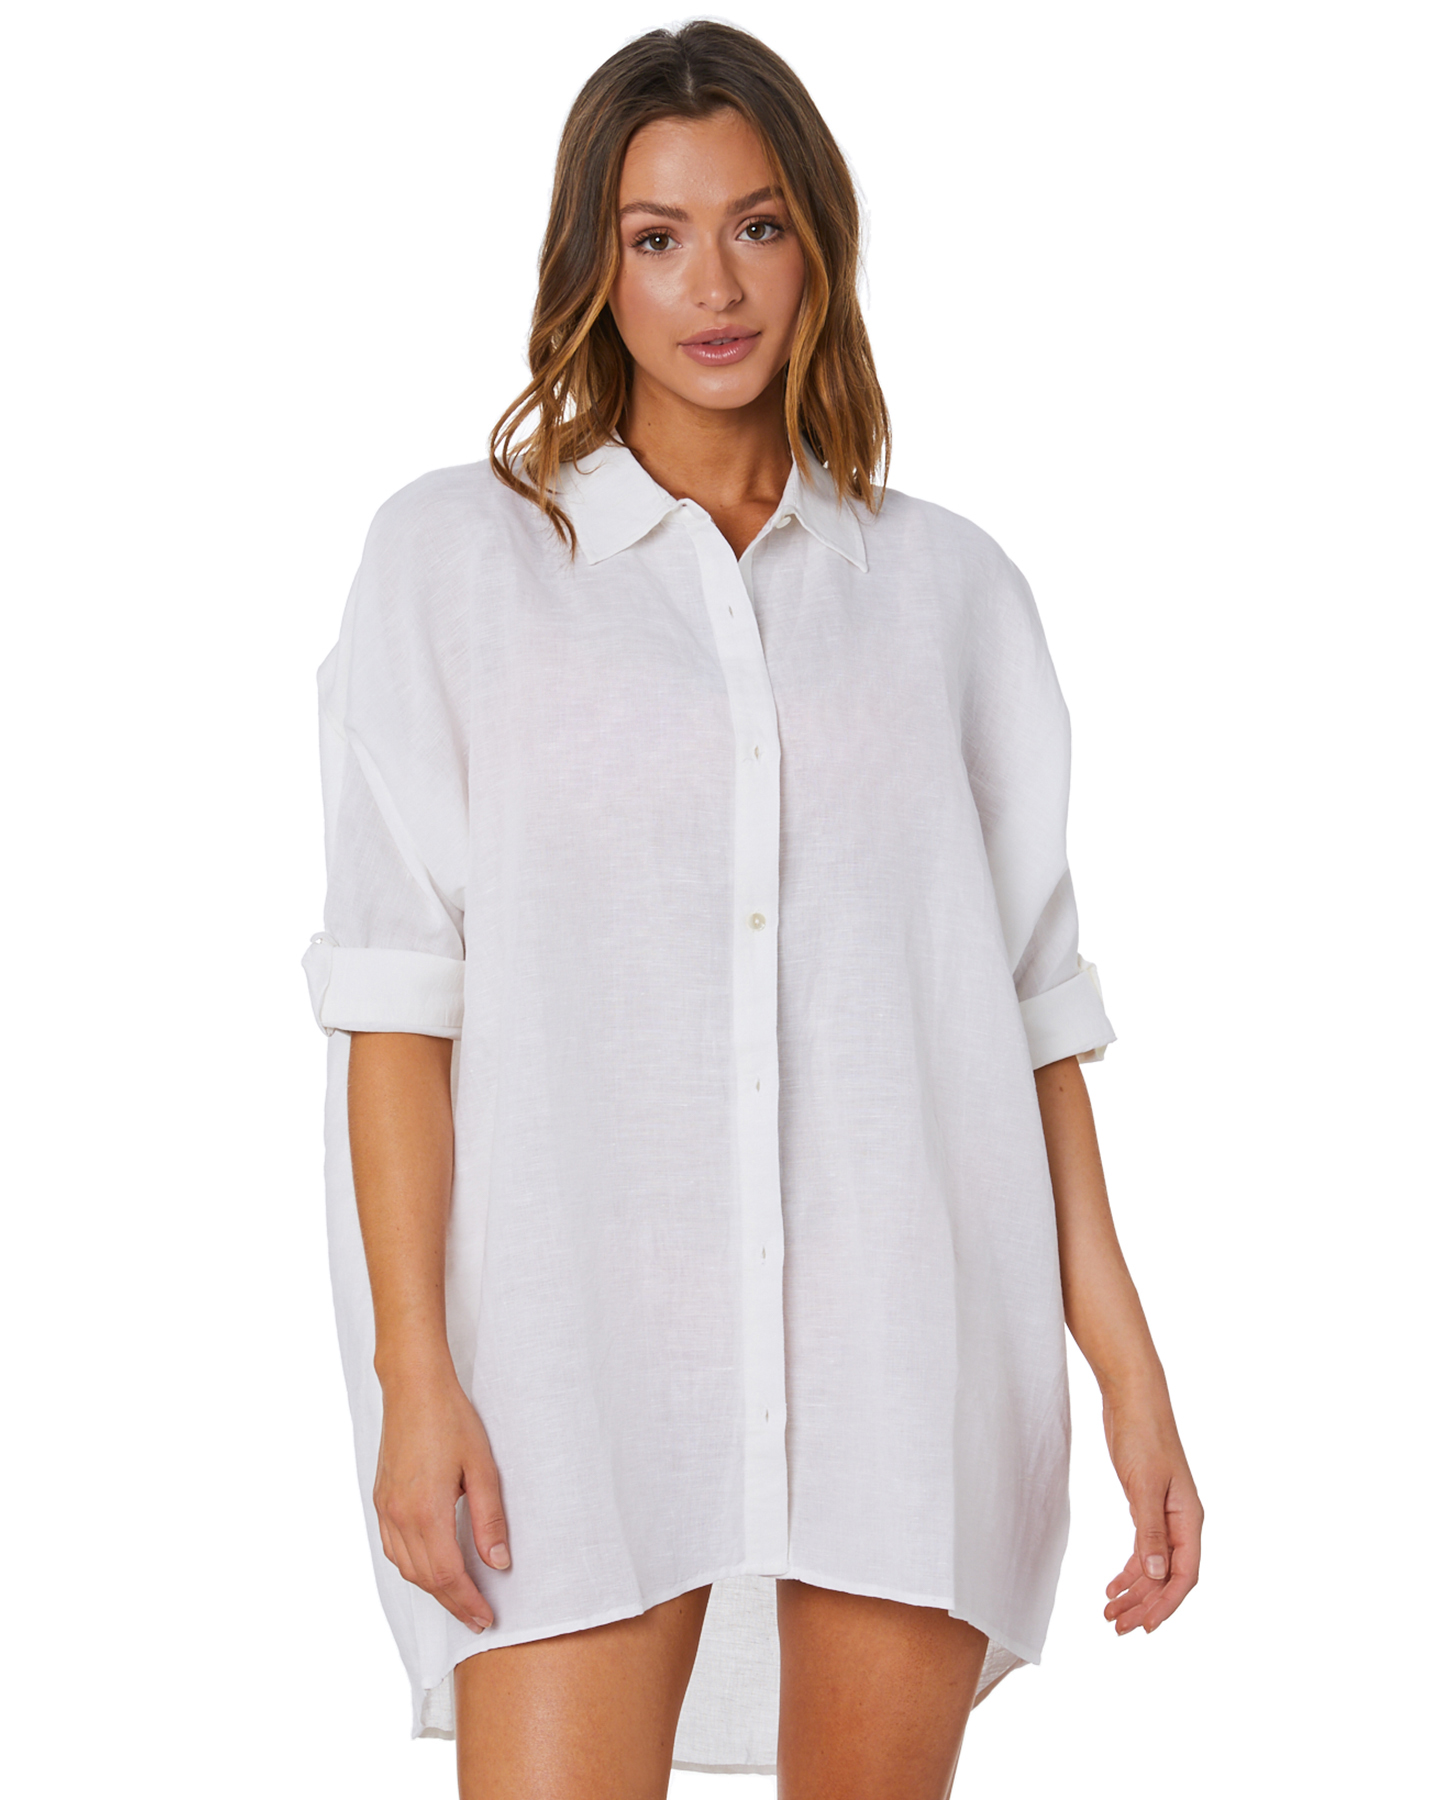 Seafolly Light Weight Linen Blend Shirt - White | SurfStitch